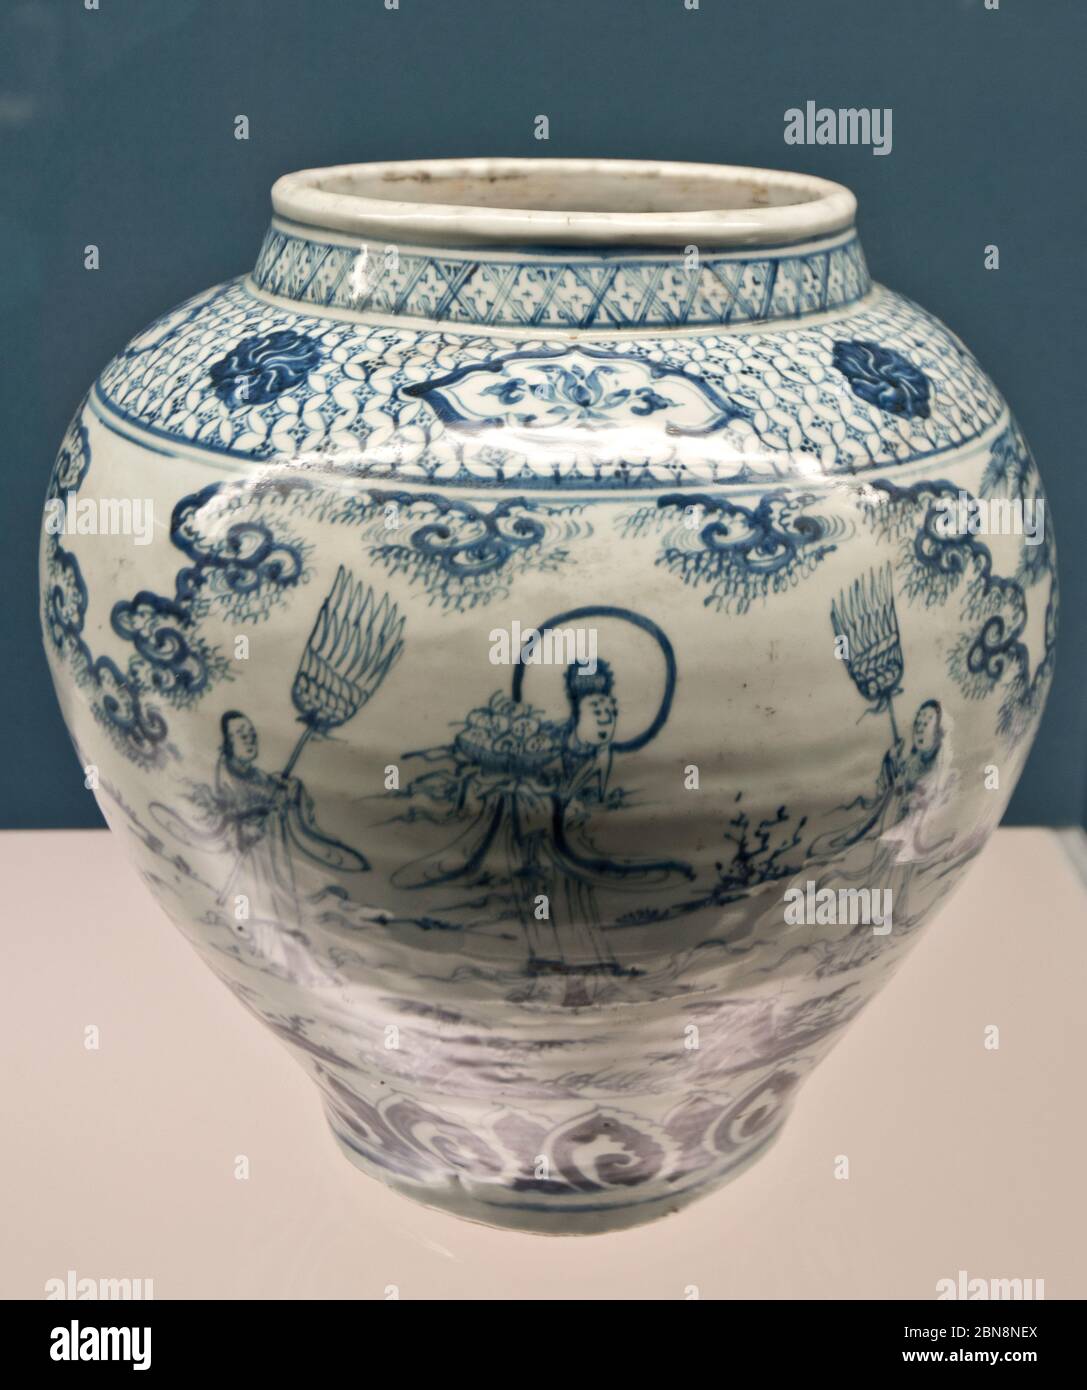 Chinesisches Porzellan: Blau-weißes Glas mit Figuren - Ming-Dynastie, Zhengtong - Tianshun Reign (1436-1464). Shanghai Museum Stockfoto